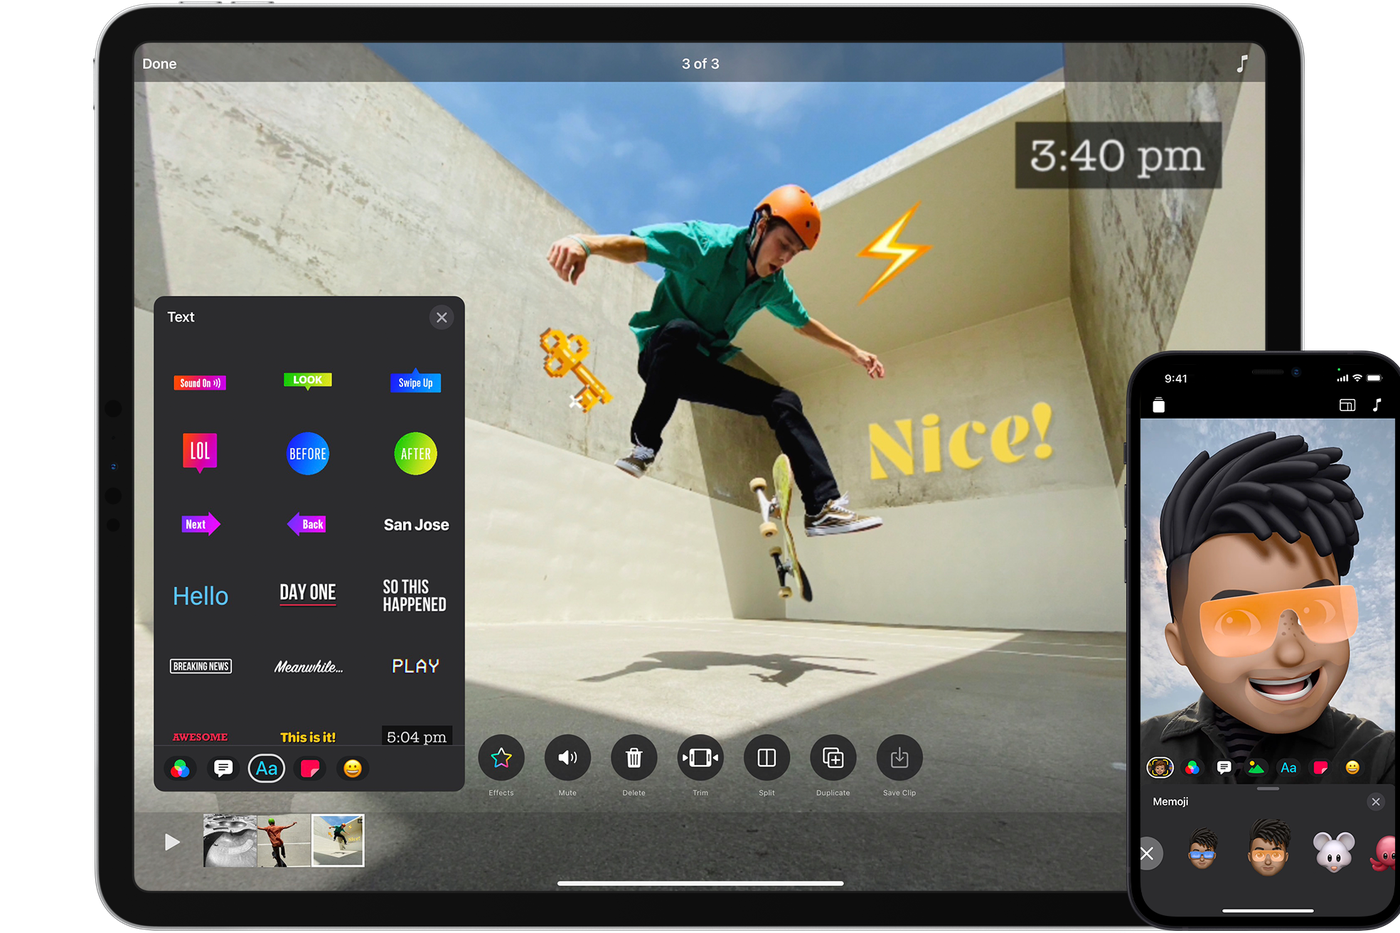 La aplicación Clips de Apple ahora es compatible con el modo cinematográfico y de video ProRes